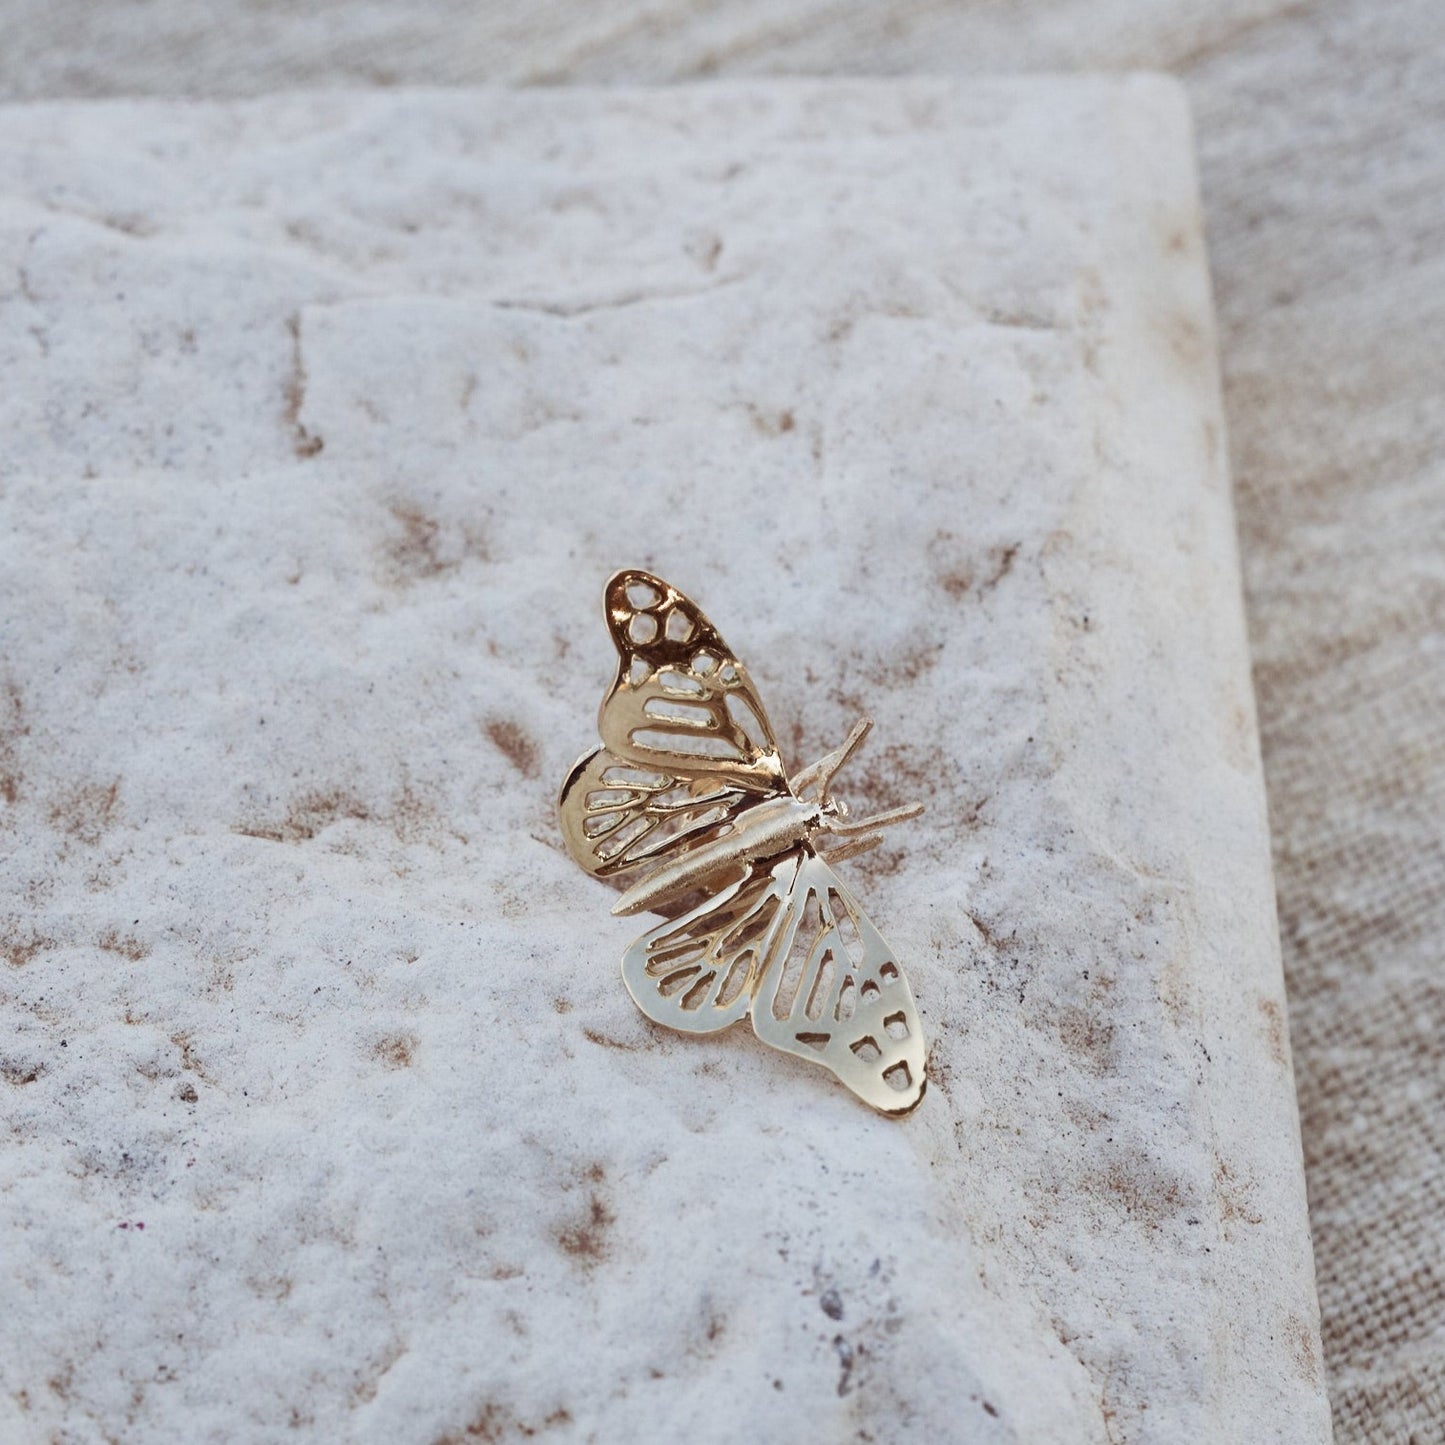 Pin Papillon, pin con forma de mariposa, fabricado en oro macizo de 9k.